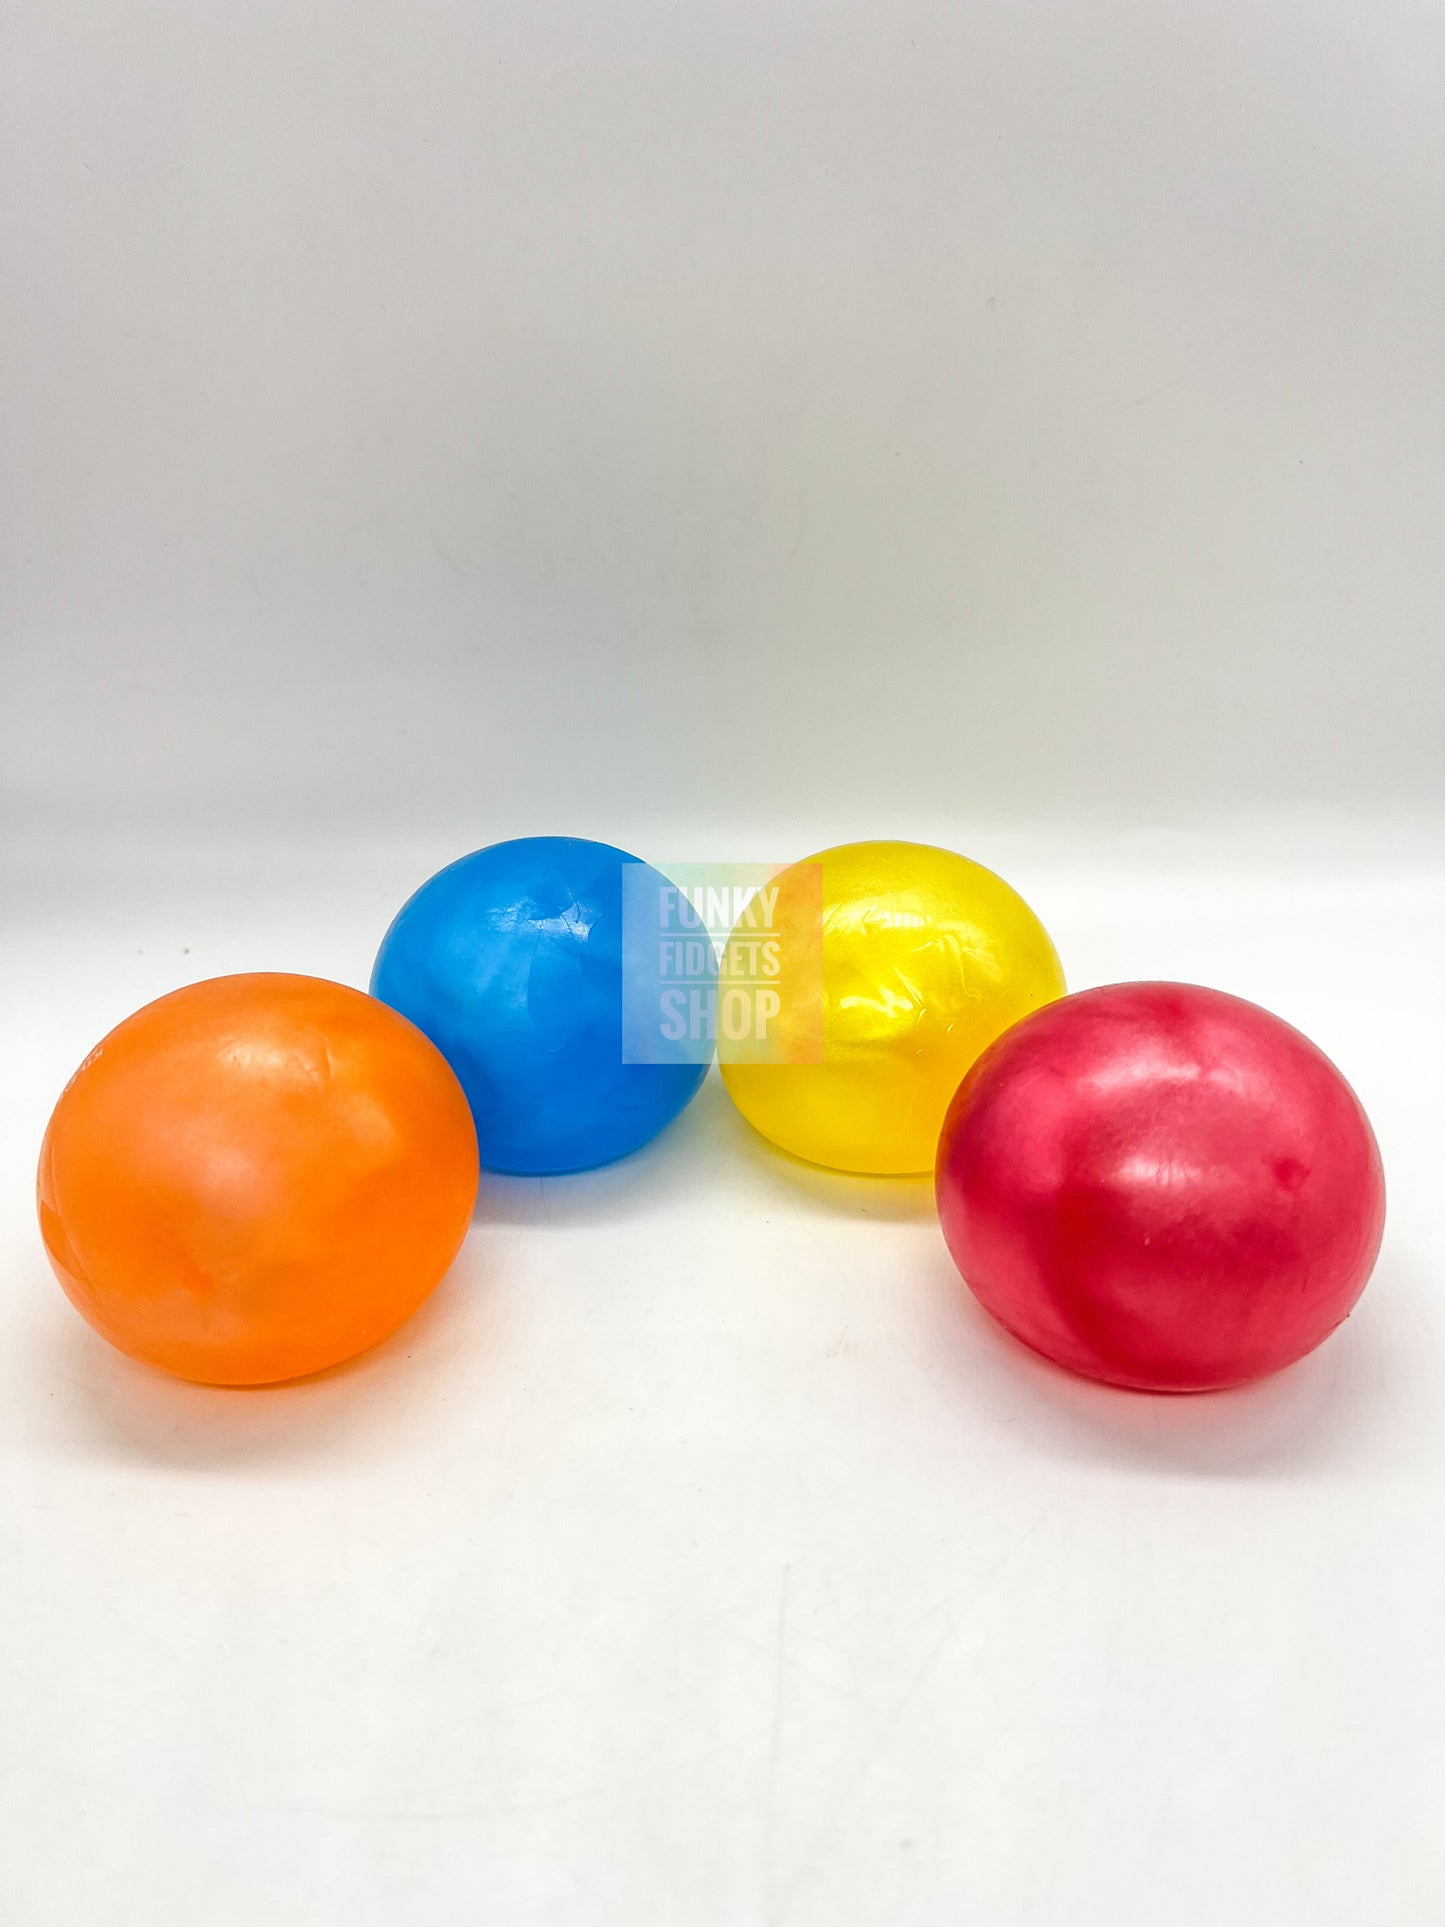 Shimmer Sugar ball